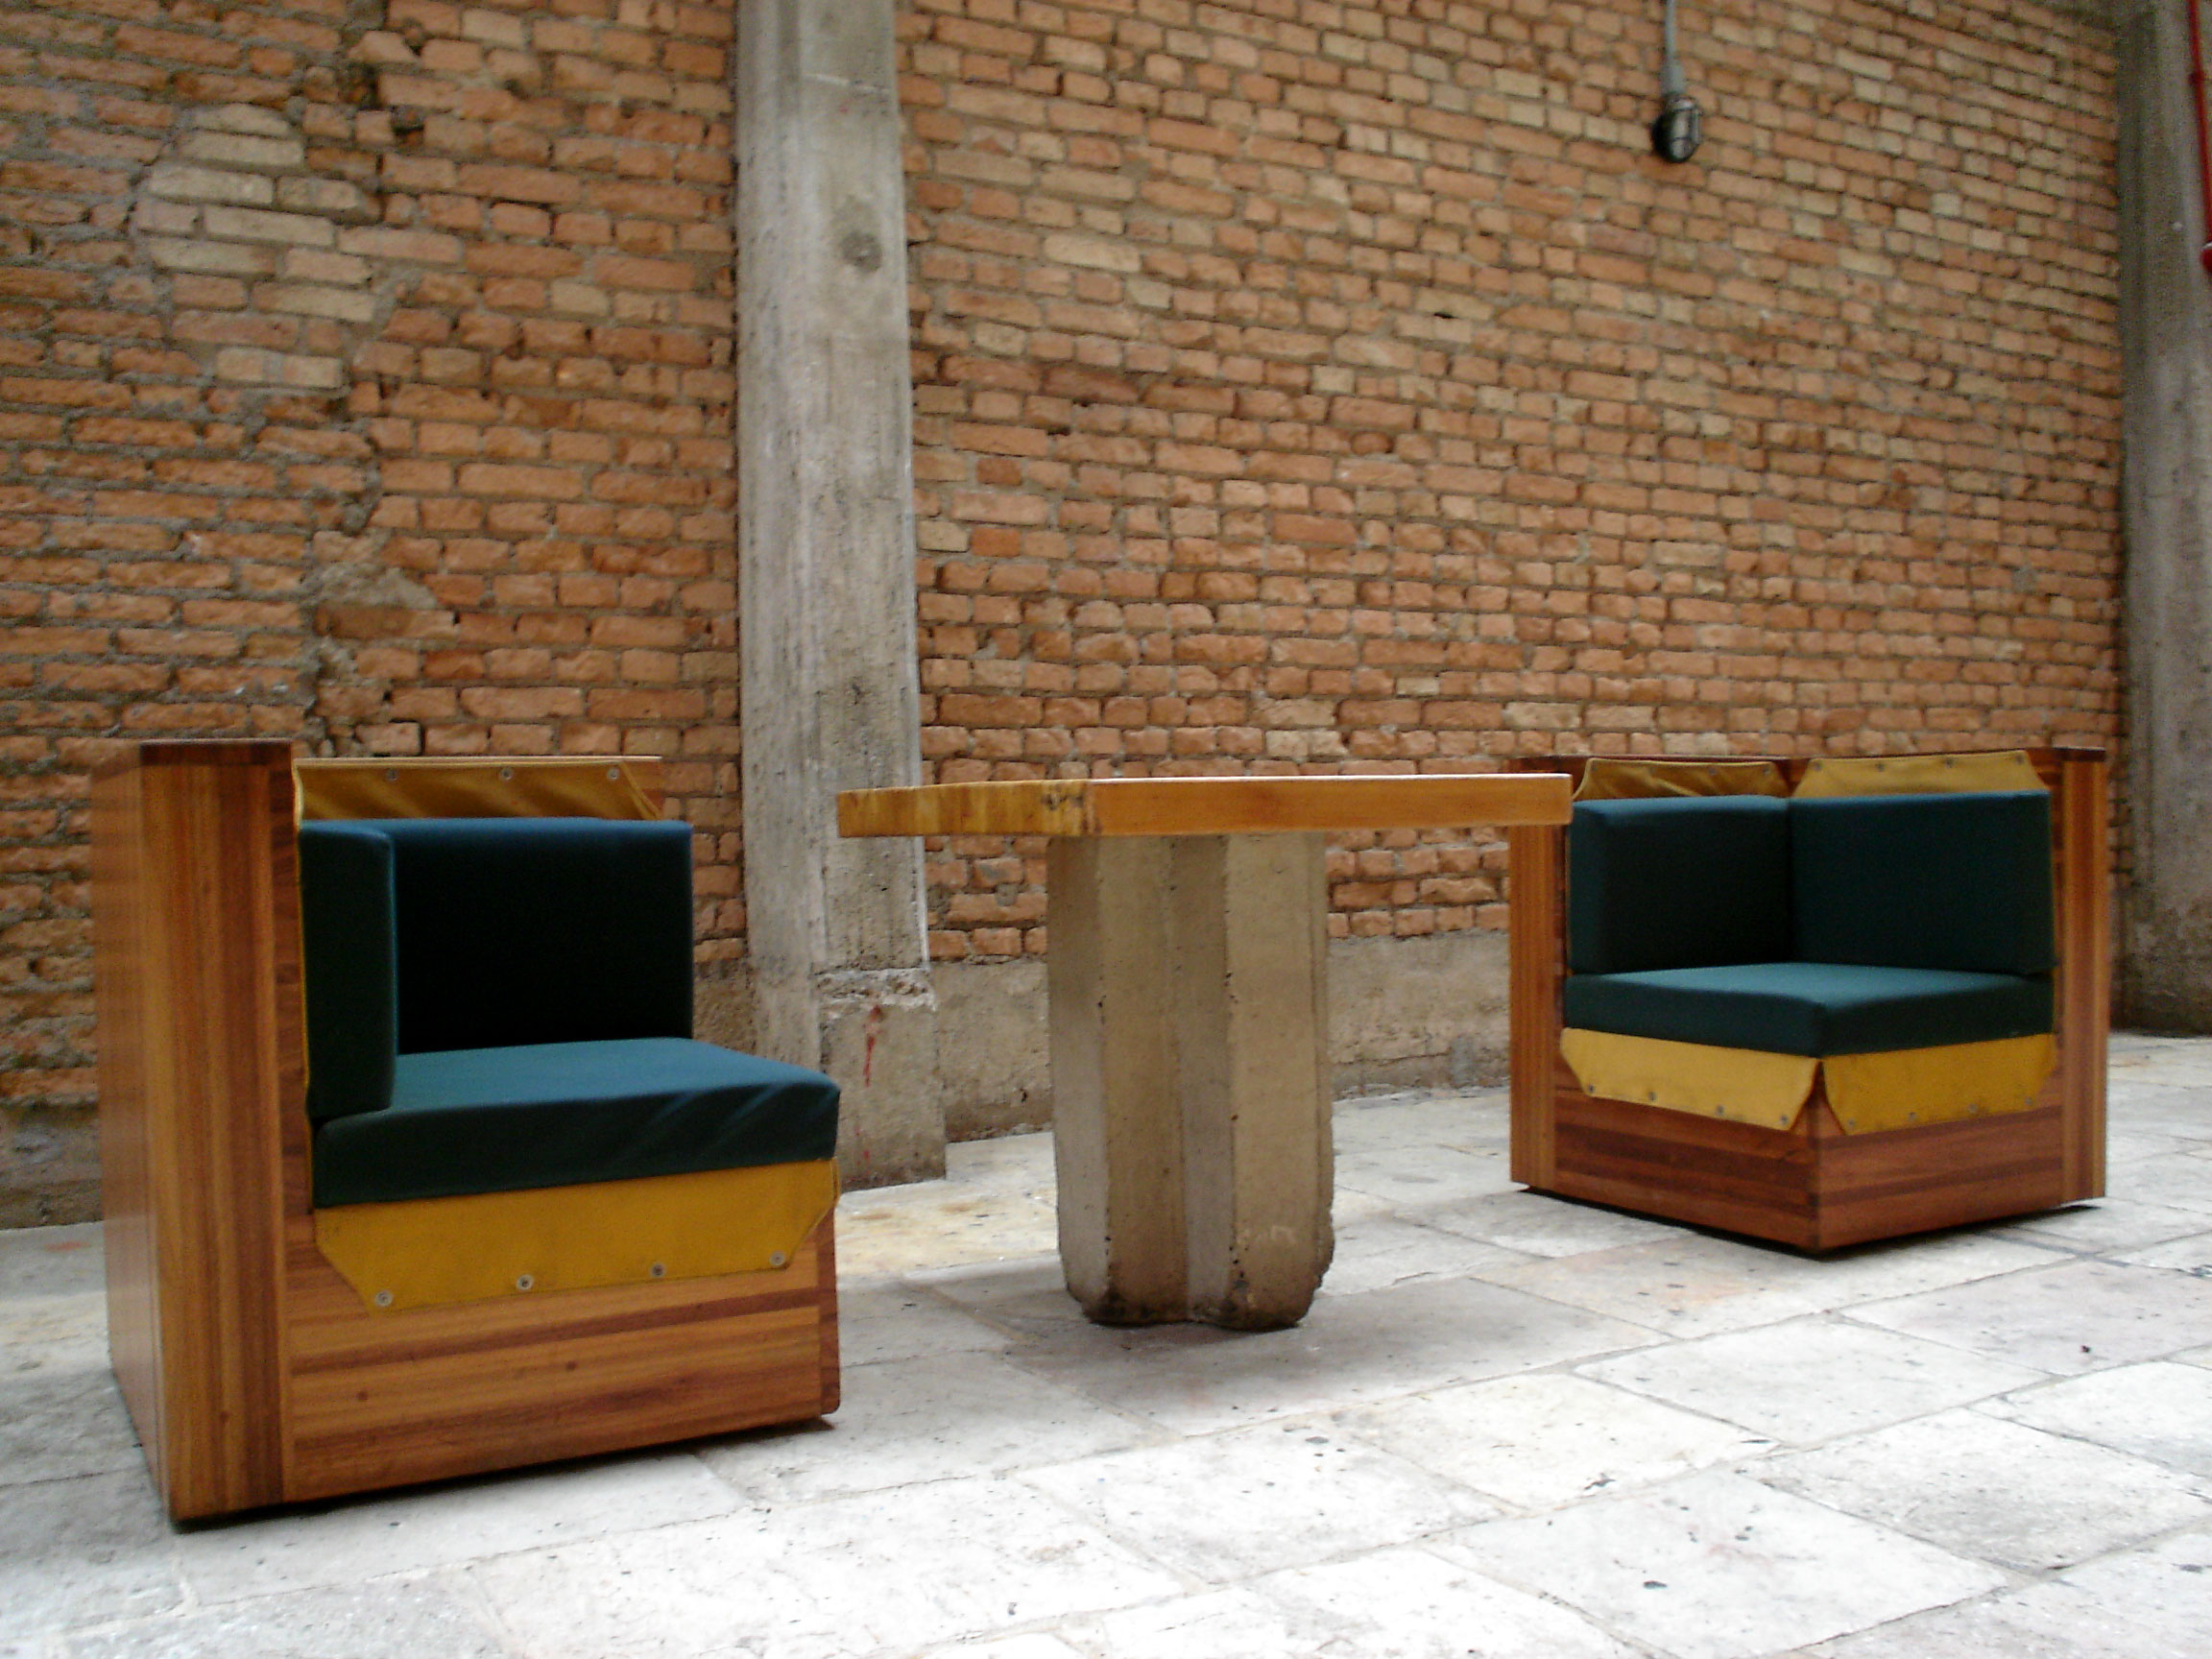 Lina_Bo_Bardi_furniture_for_SESC_Pompéia_paulisson miura_wikimedia_commons